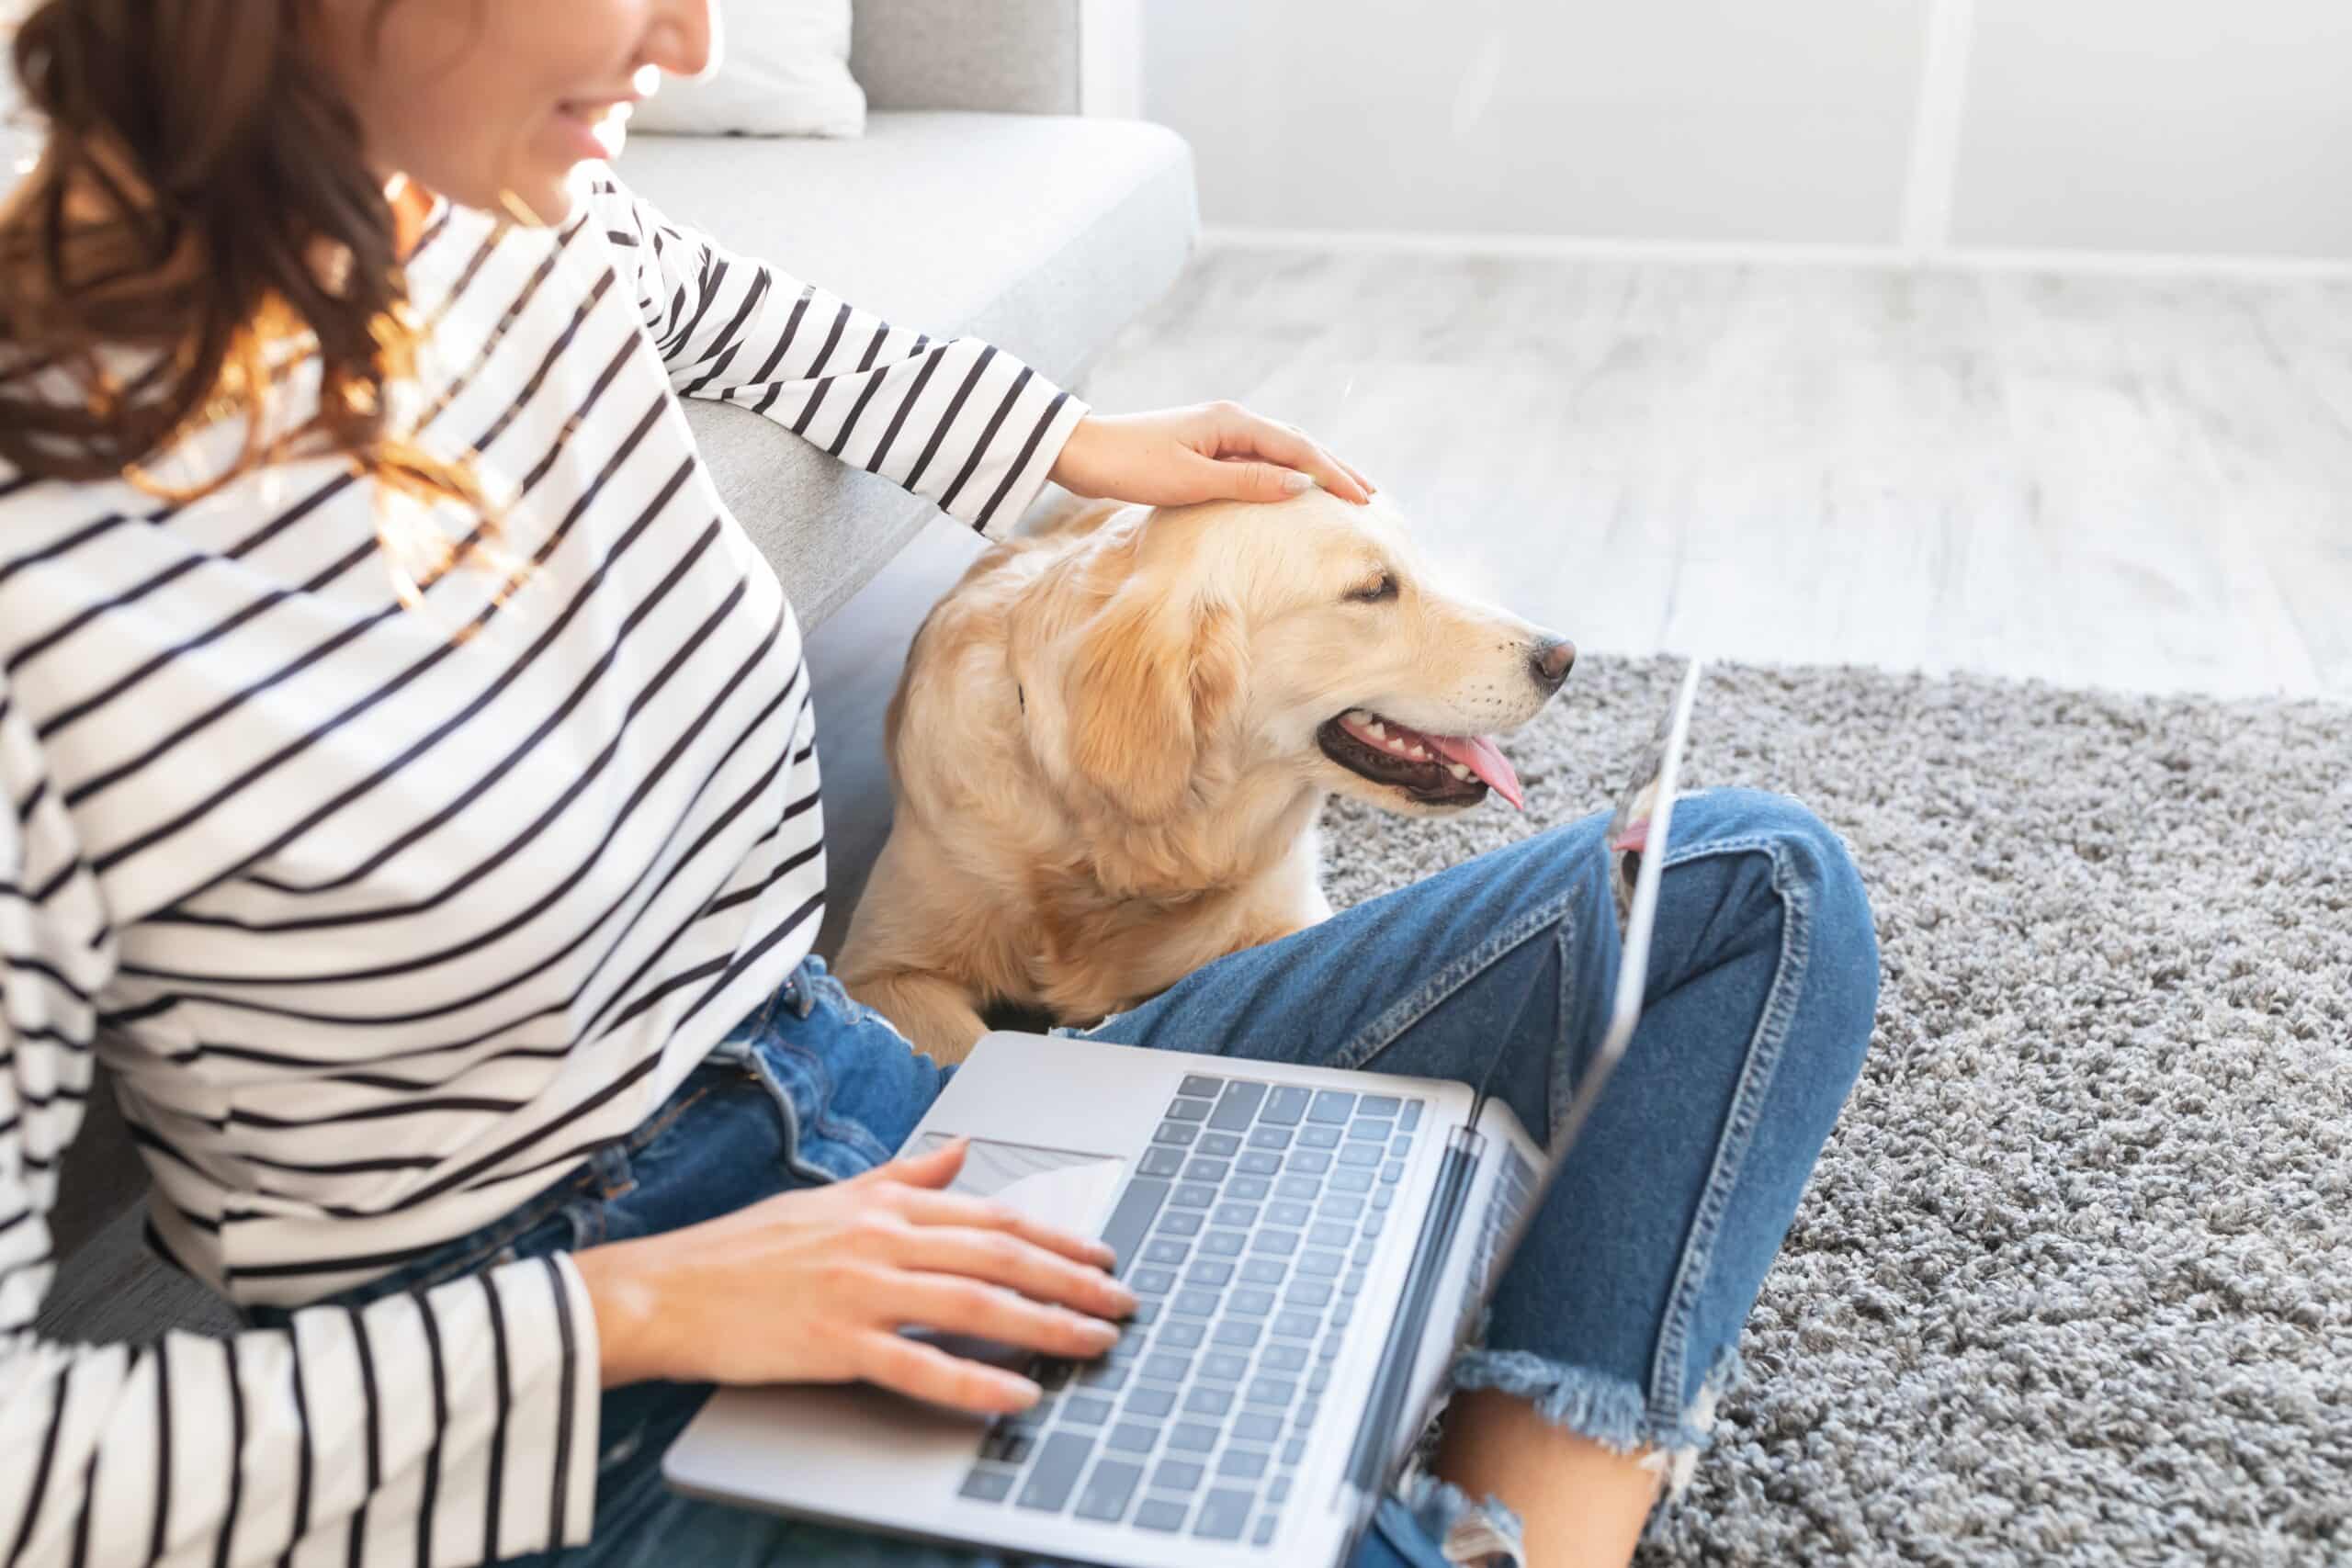 PR-Agentur, junge Frau mit Laptop auf dem Schoss streichelt Hund